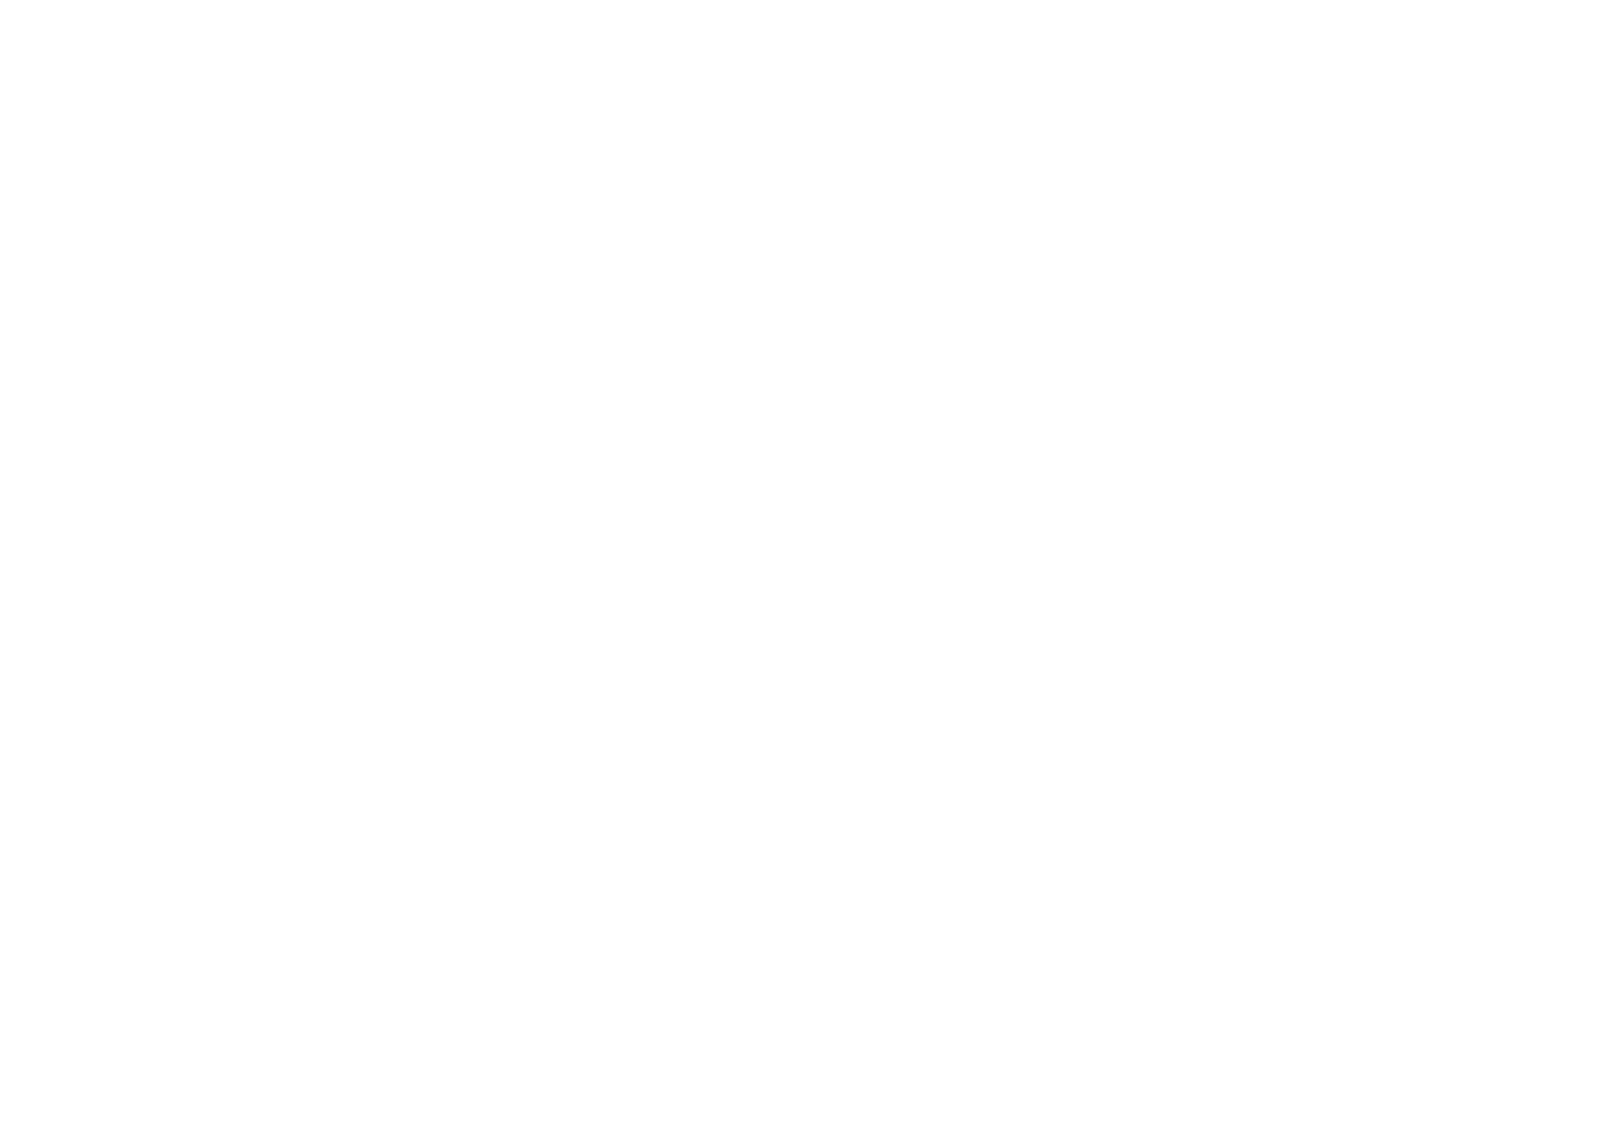 Vister Media